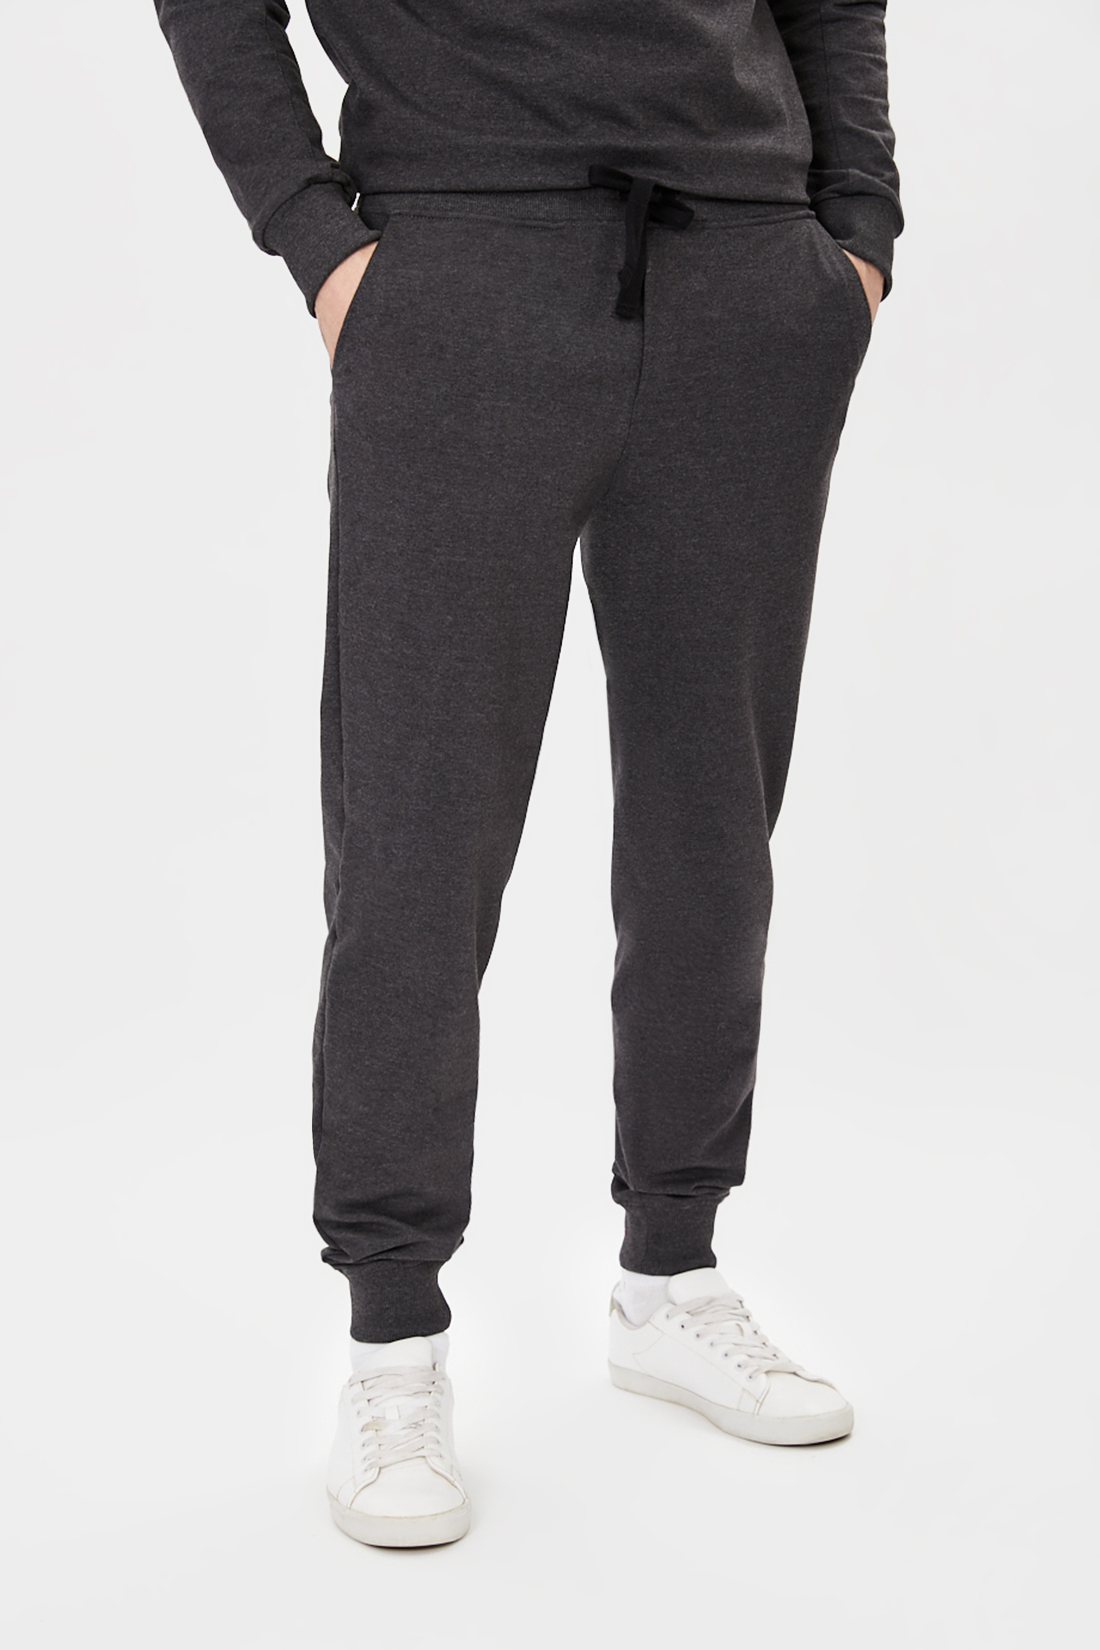 Трикотажные брюки-джоггеры (арт. baon B791018), размер L, цвет marengo melange#серый Трикотажные брюки-джоггеры (арт. baon B791018) - фото 1